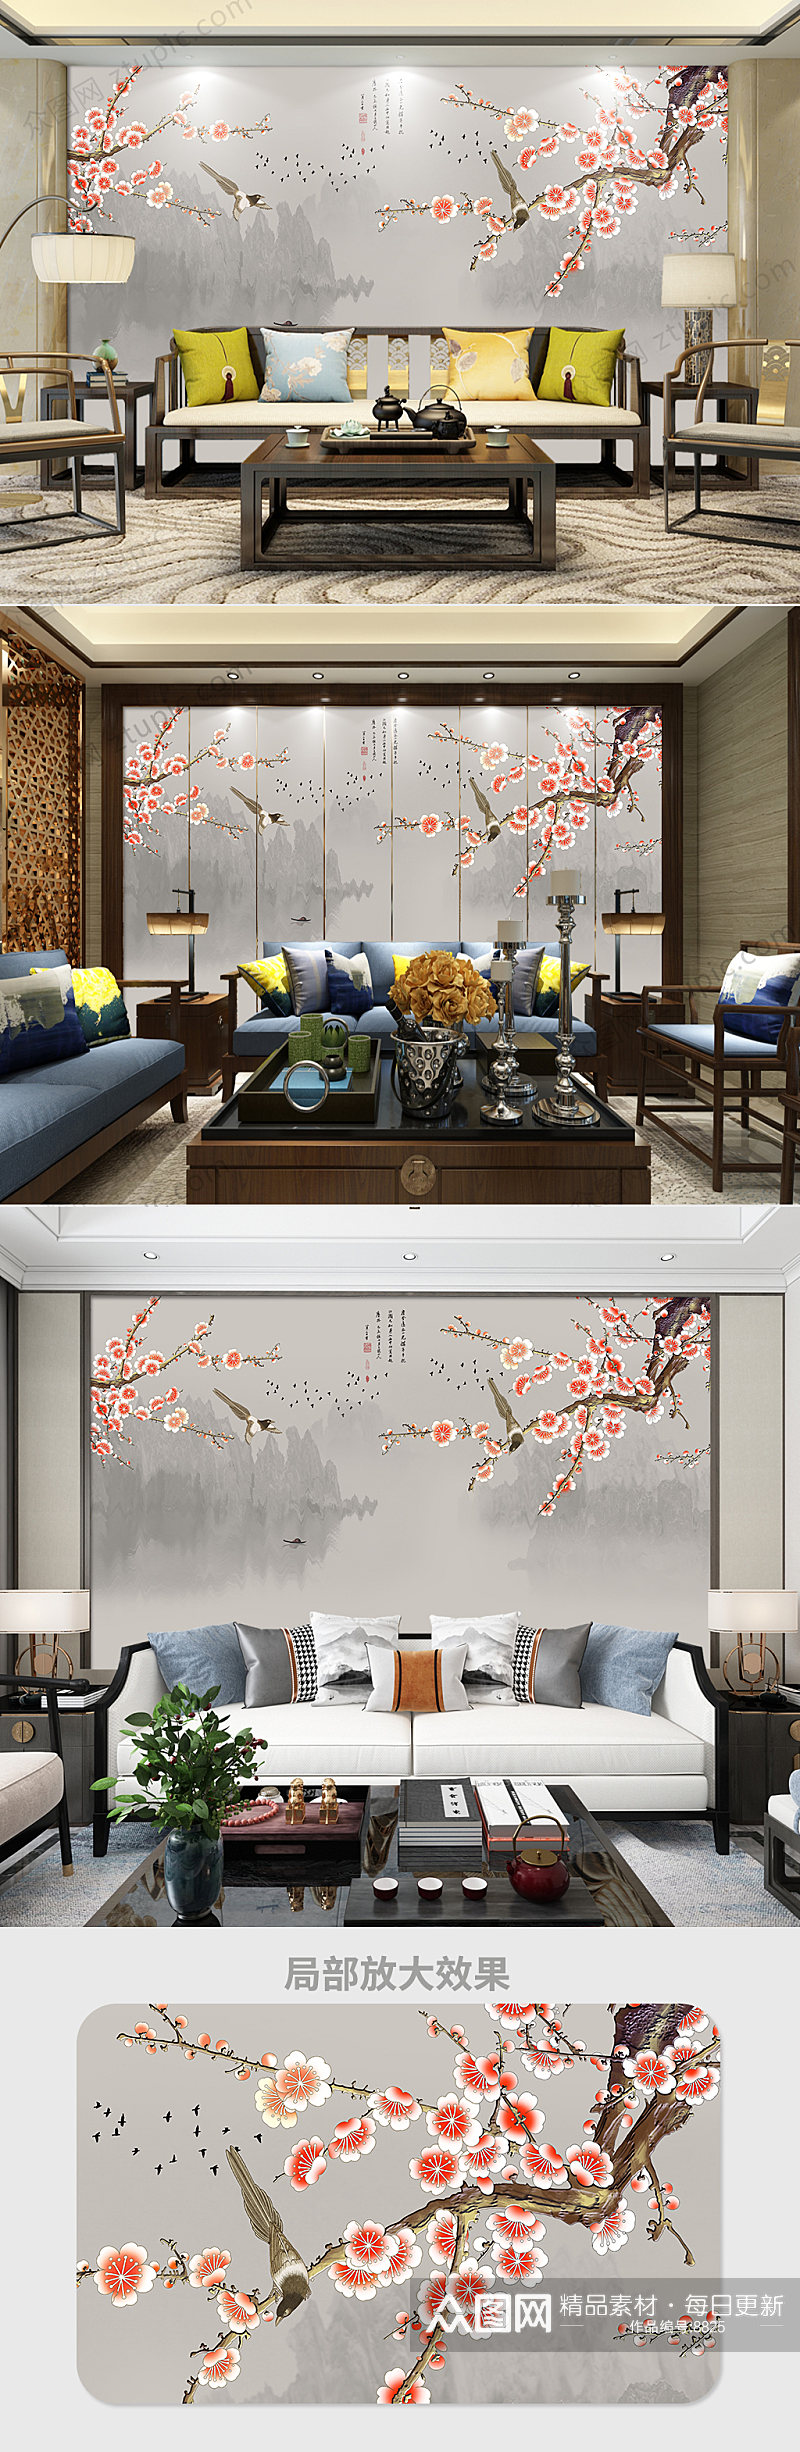 原创新中式手绘花鸟工笔梅花背景墙装饰画素材